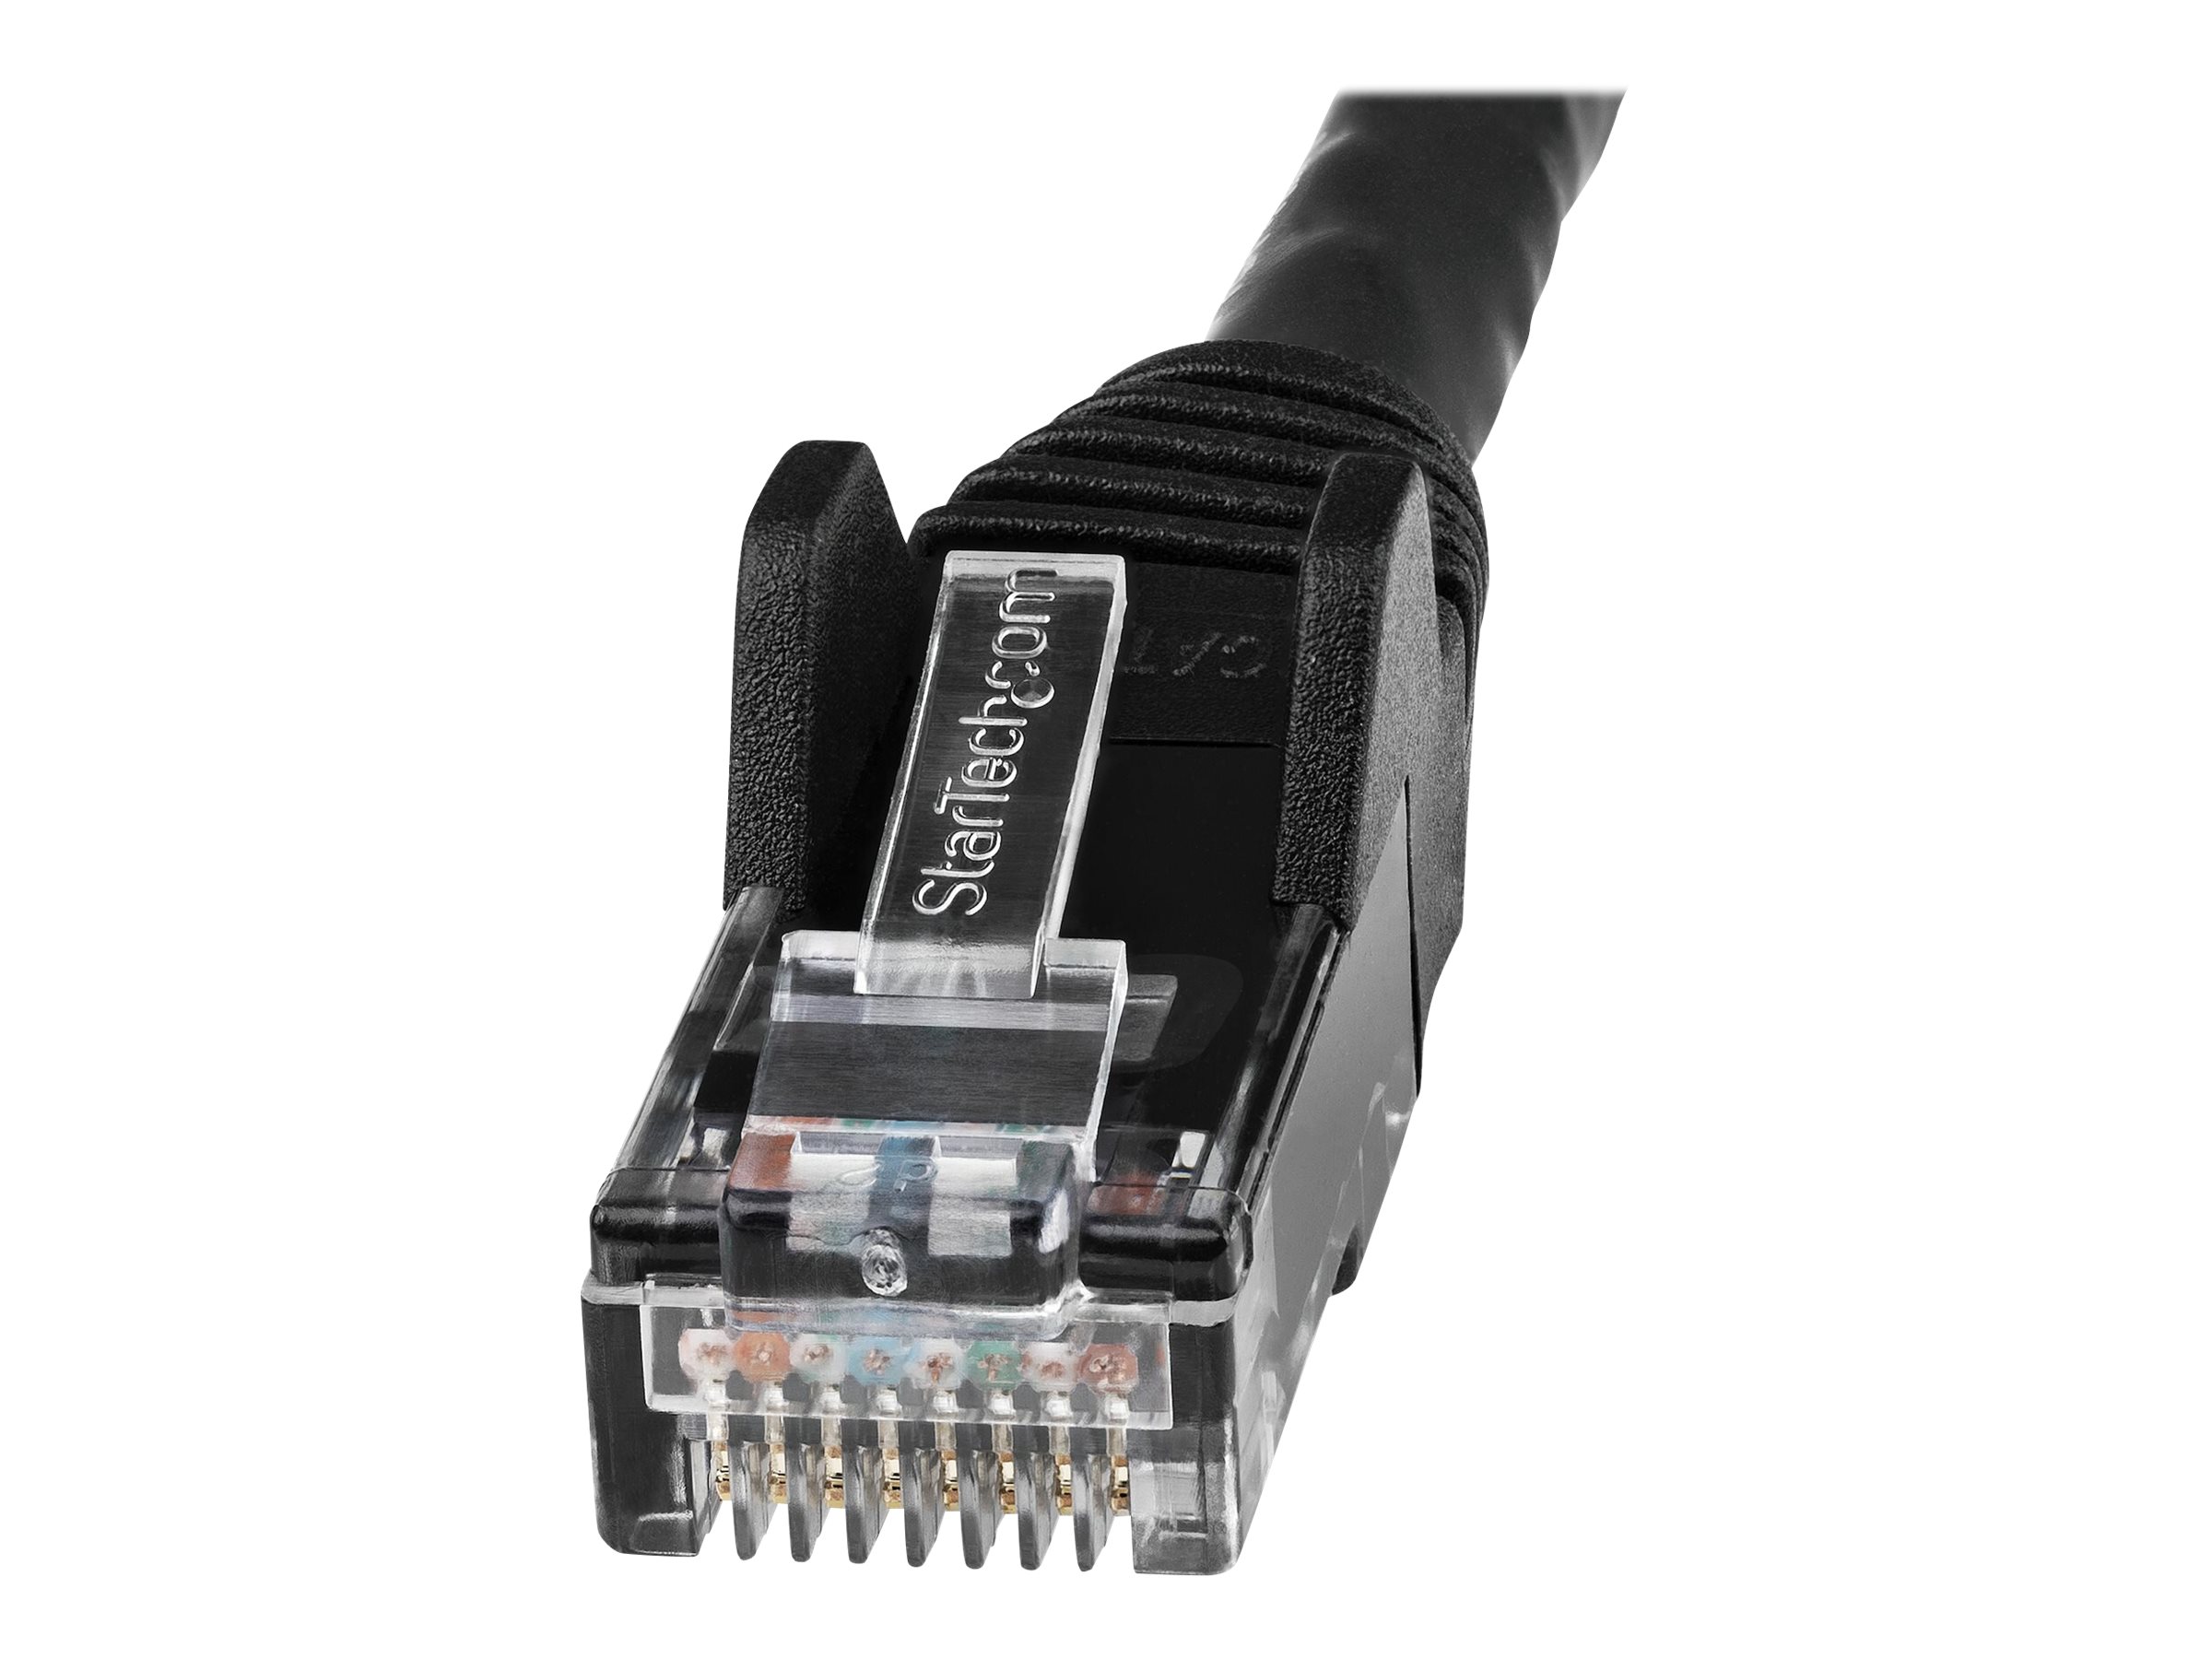 StarTech.com Câble Ethernet CAT6 10m - LSZH (Low Smoke Zero Halogen) - Cordon RJ45 UTP Anti-accrochage 10 GbE LAN - Câble Réseau Internet 650MHz 100W PoE - Noir - Snagless - 24AWG (N6LPATCH10MBK) - Cordon de raccordement - RJ-45 (M) pour RJ-45 (M) - 10 m - 6 mm - UTP - CAT 6 - sans crochet - noir - N6LPATCH10MBK - Câbles à paire torsadée